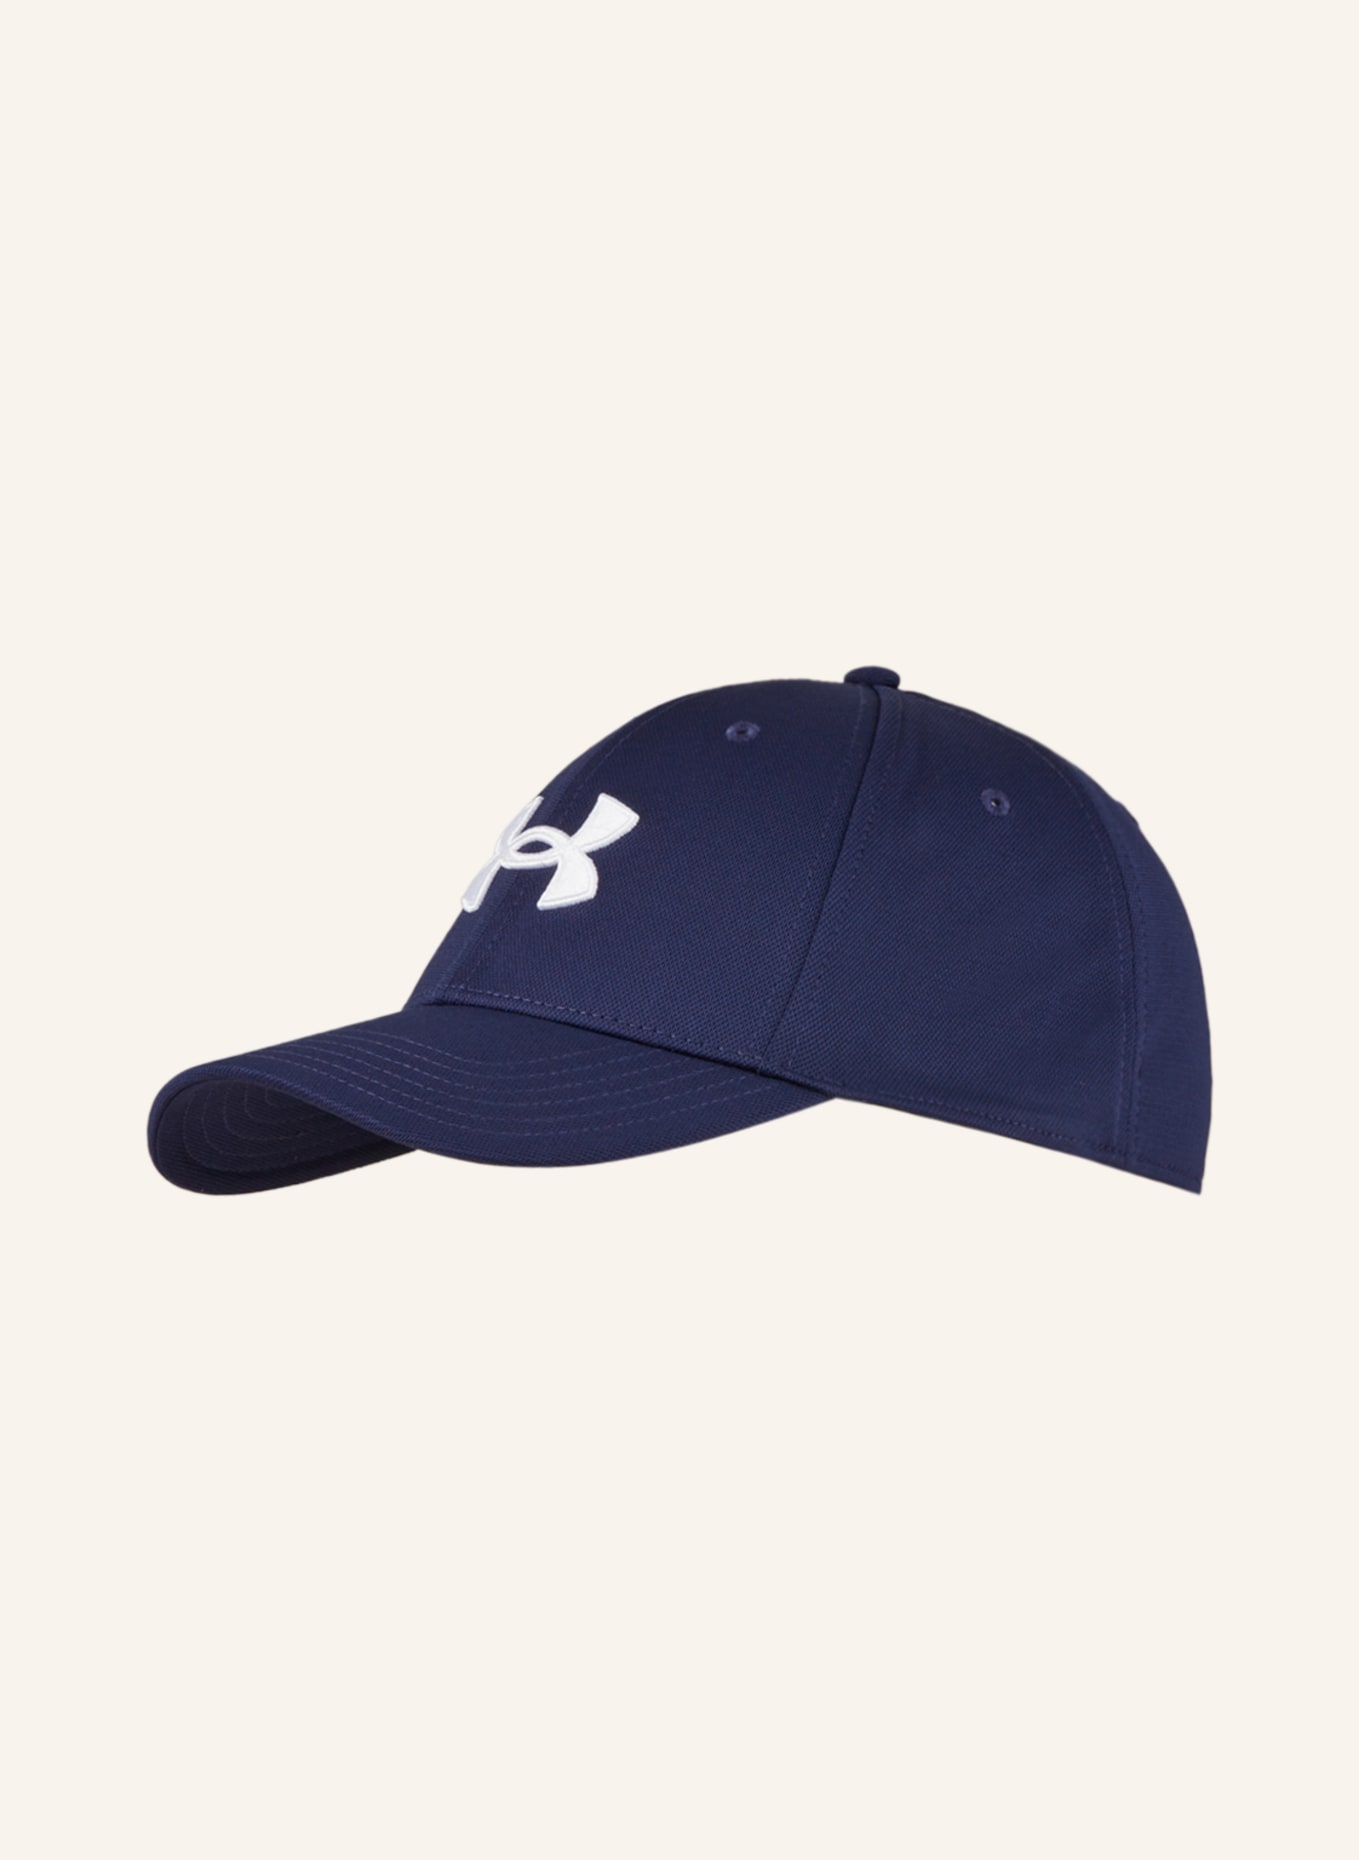 UNDER ARMOUR CAP - 帽子